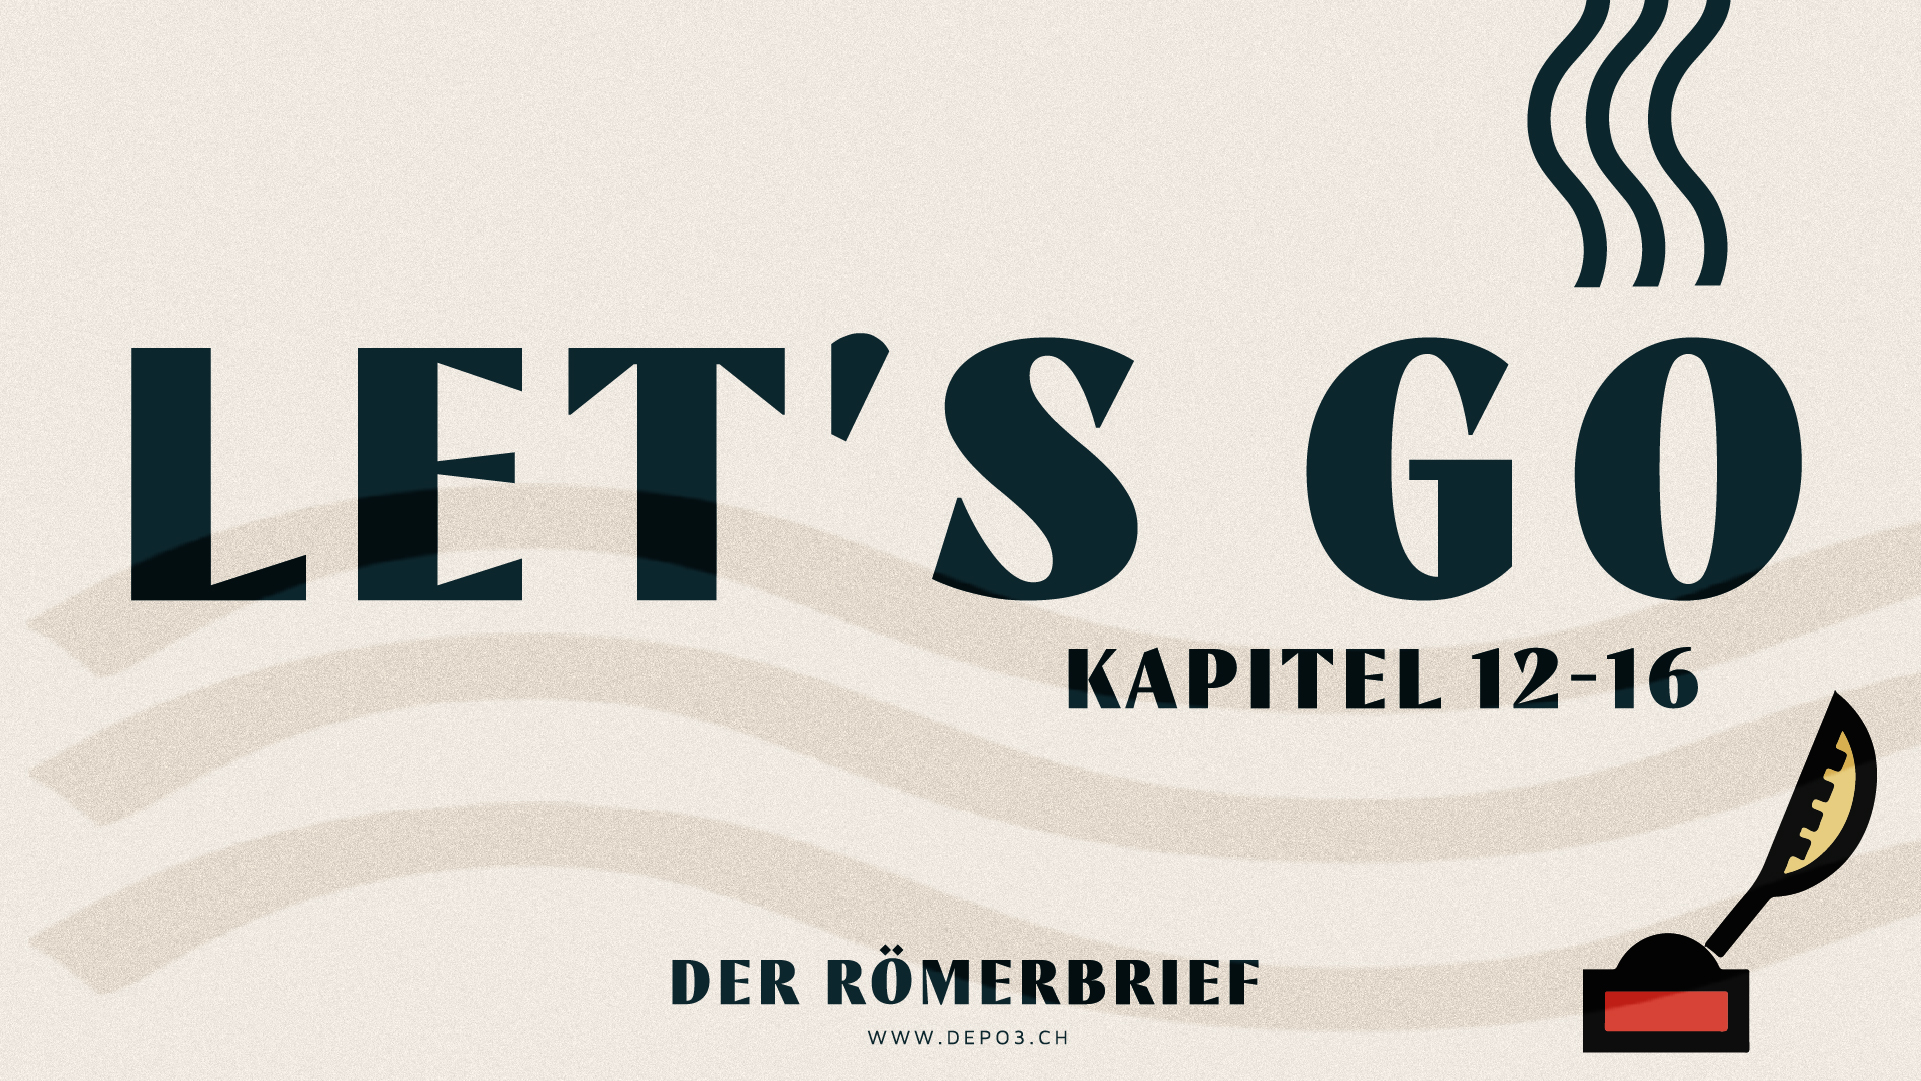 Let's Go - Römer Kapitel 12-16 Image